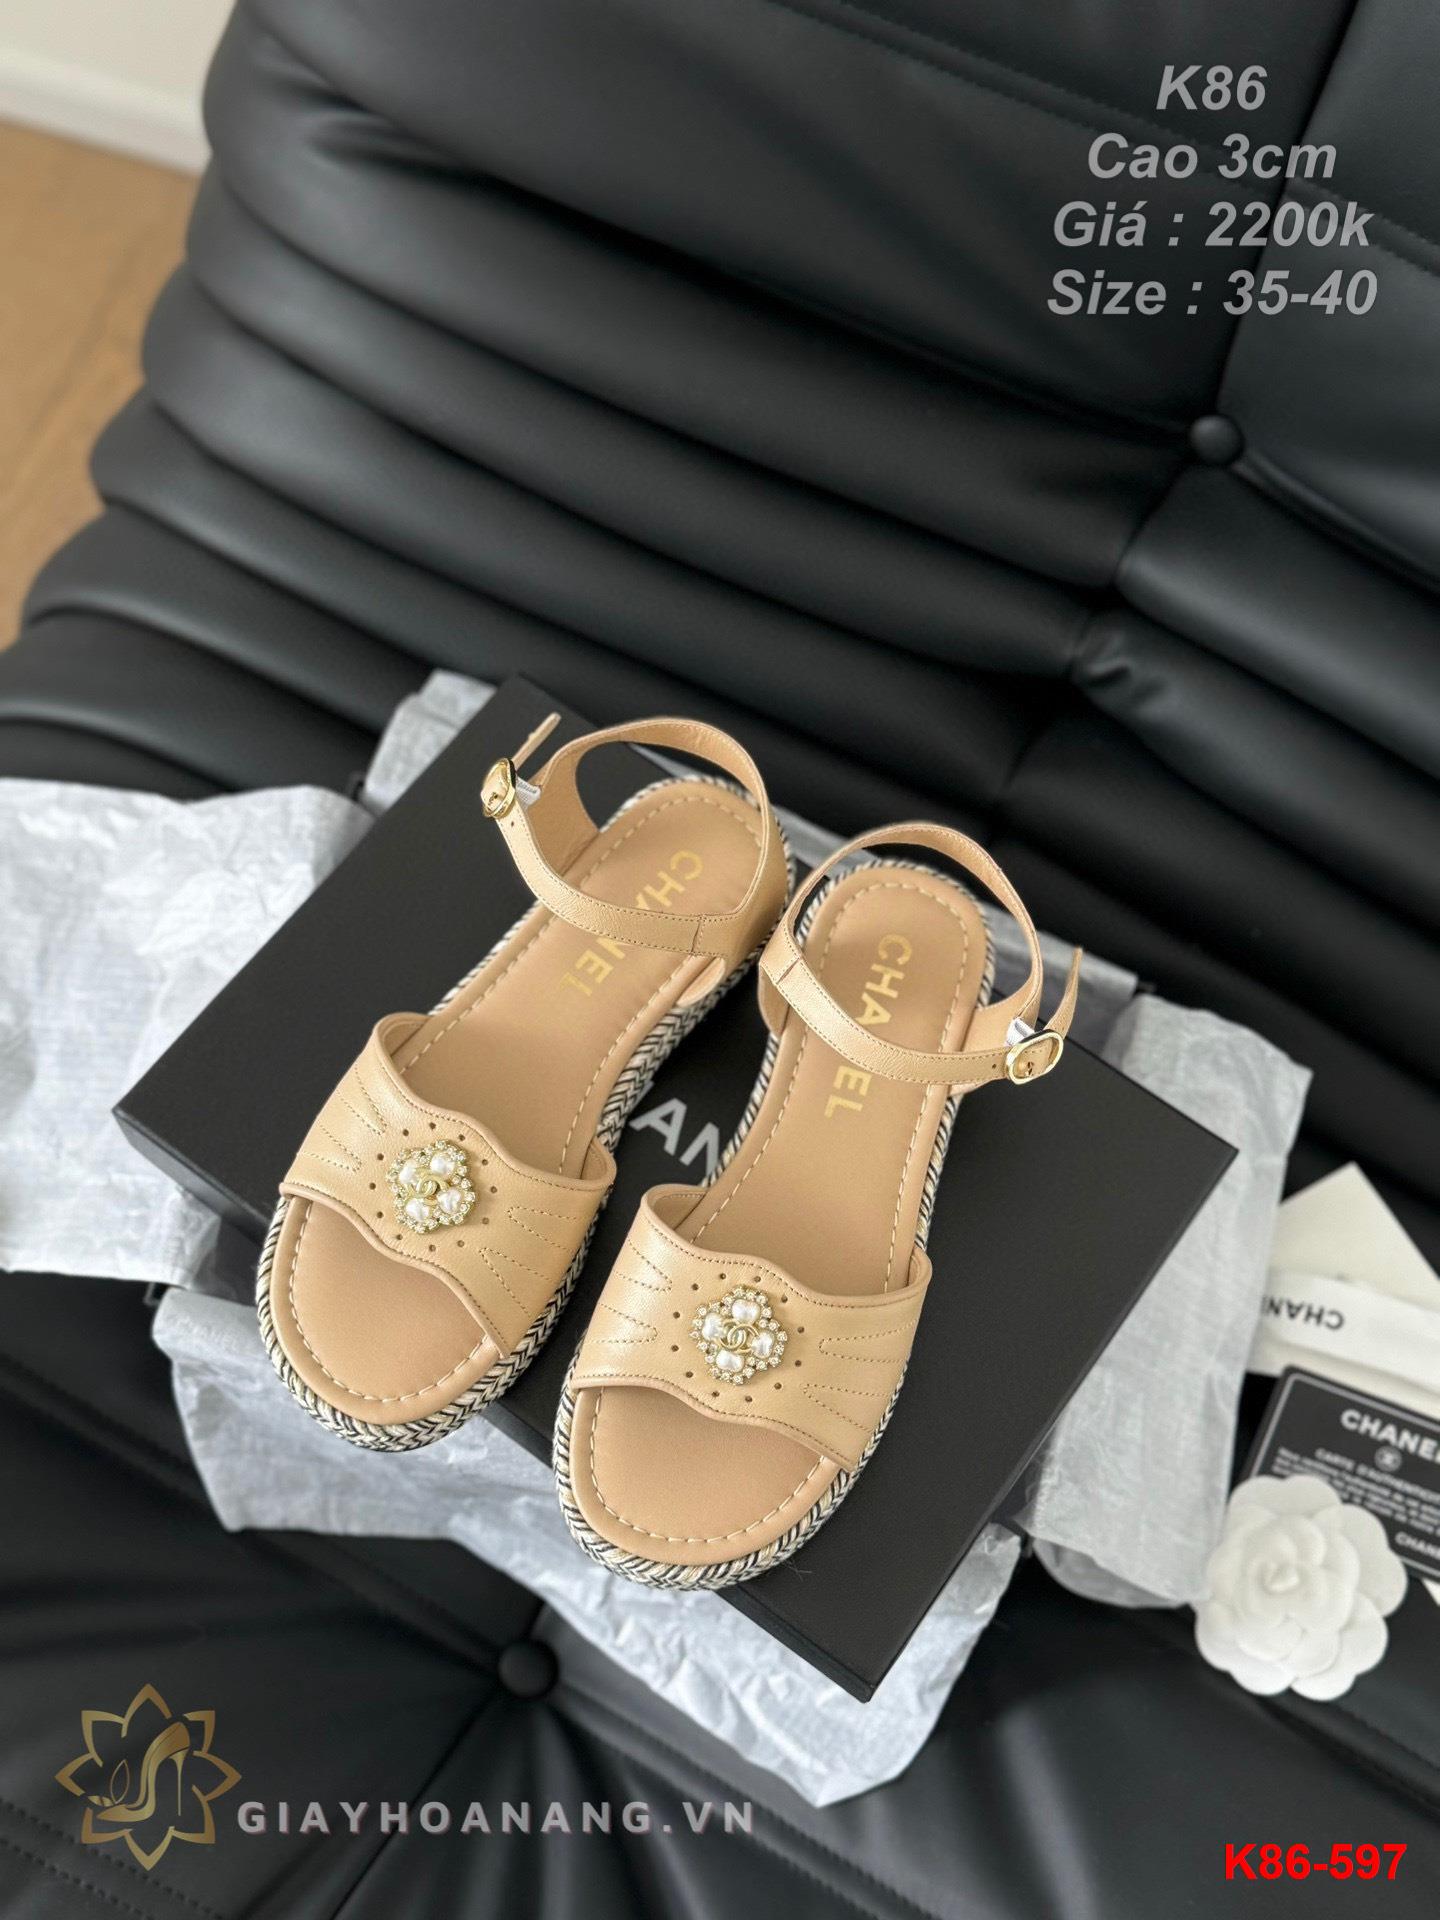 K86-597 Chanel sandal cao gót 3cm siêu cấp